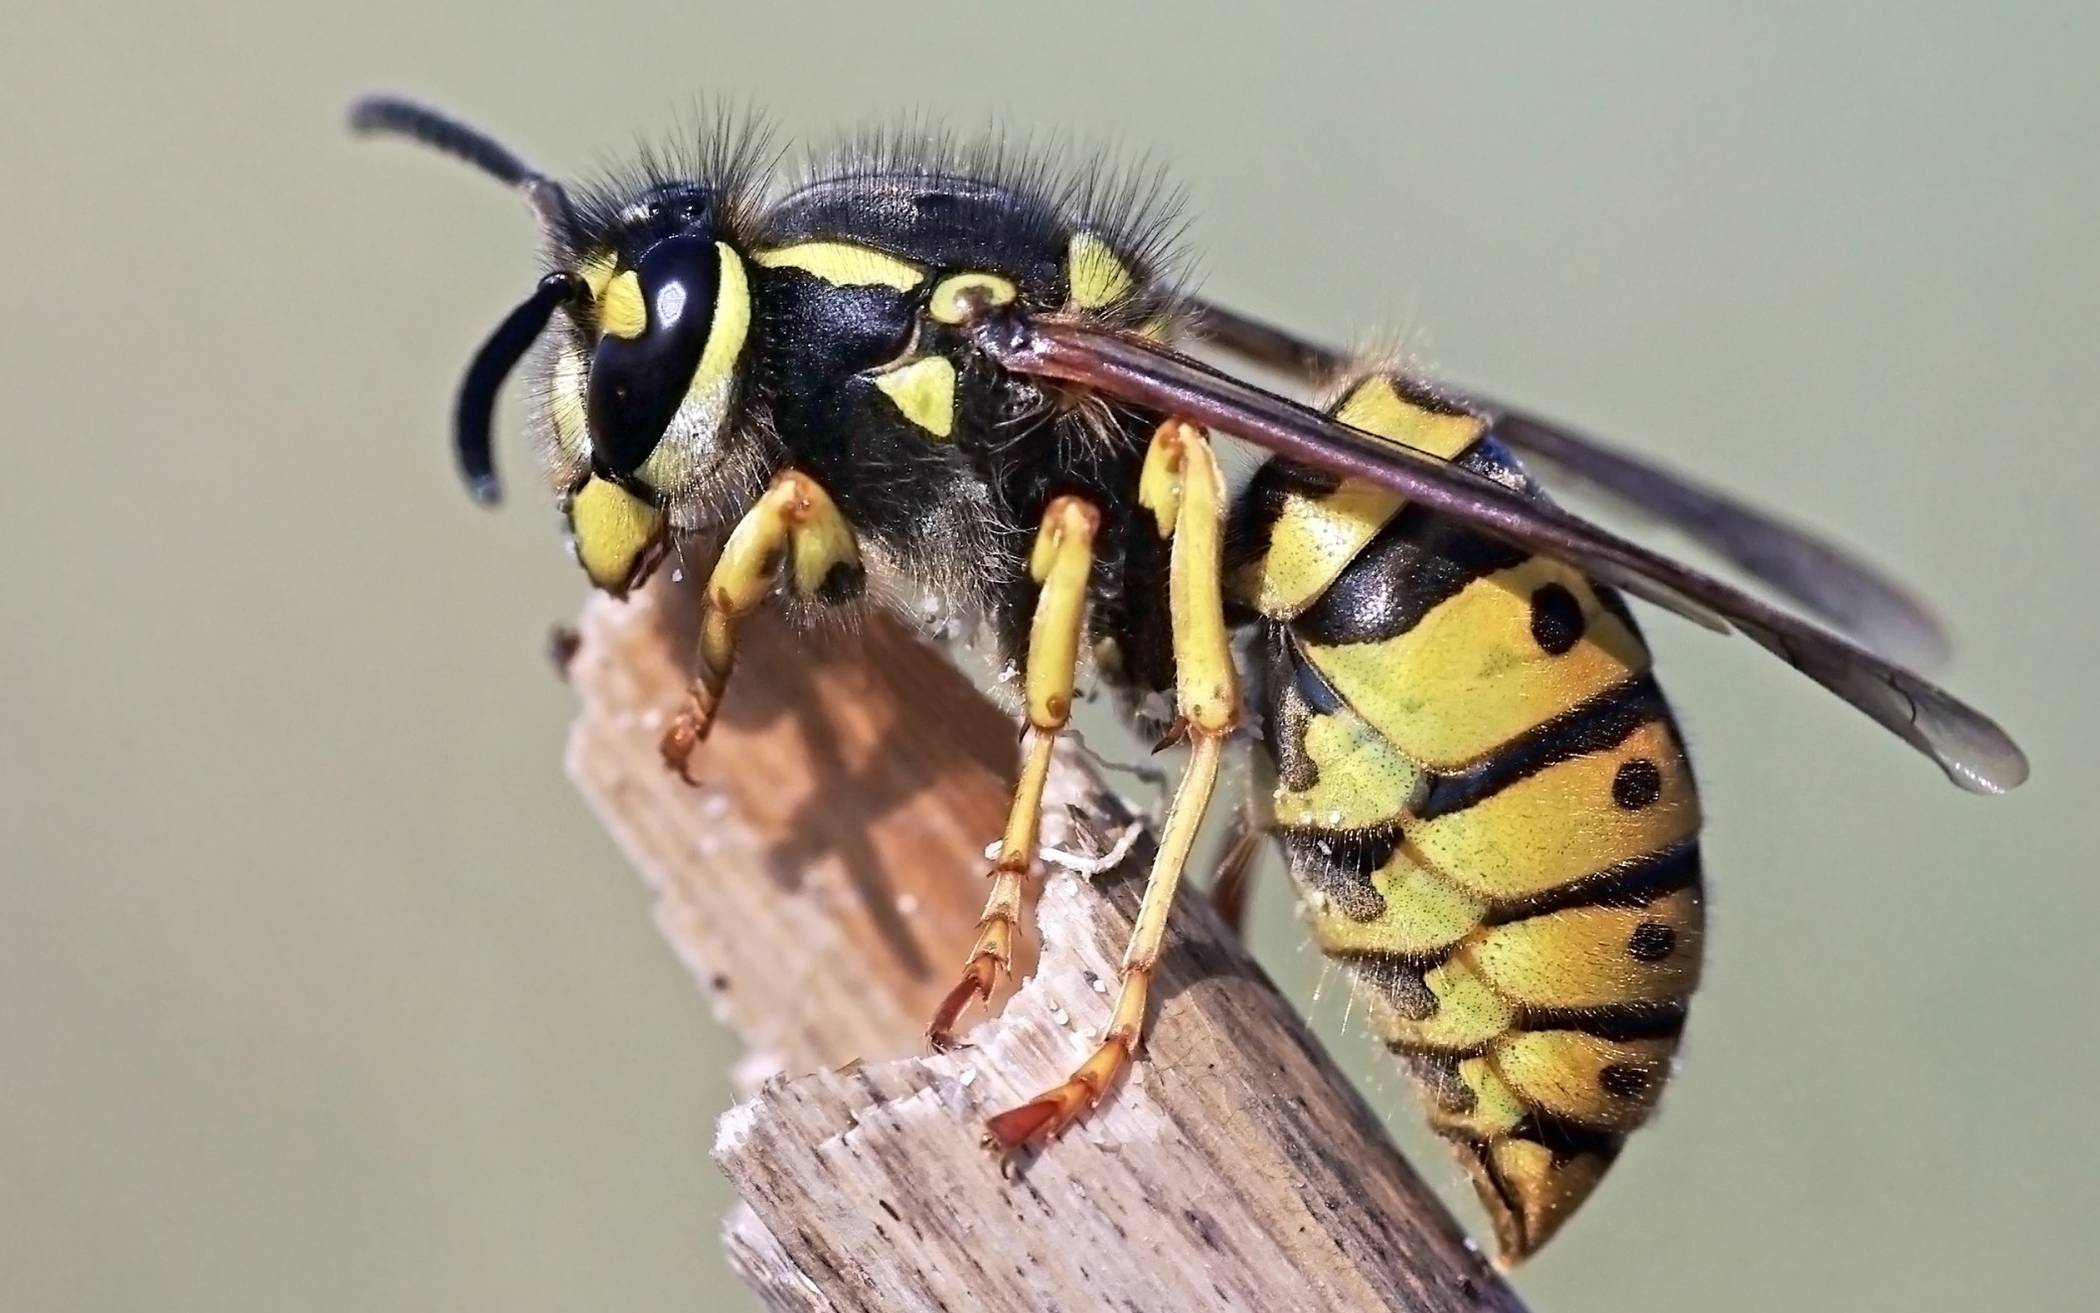 Tipps für Umgang mit Wespen und Hornissen